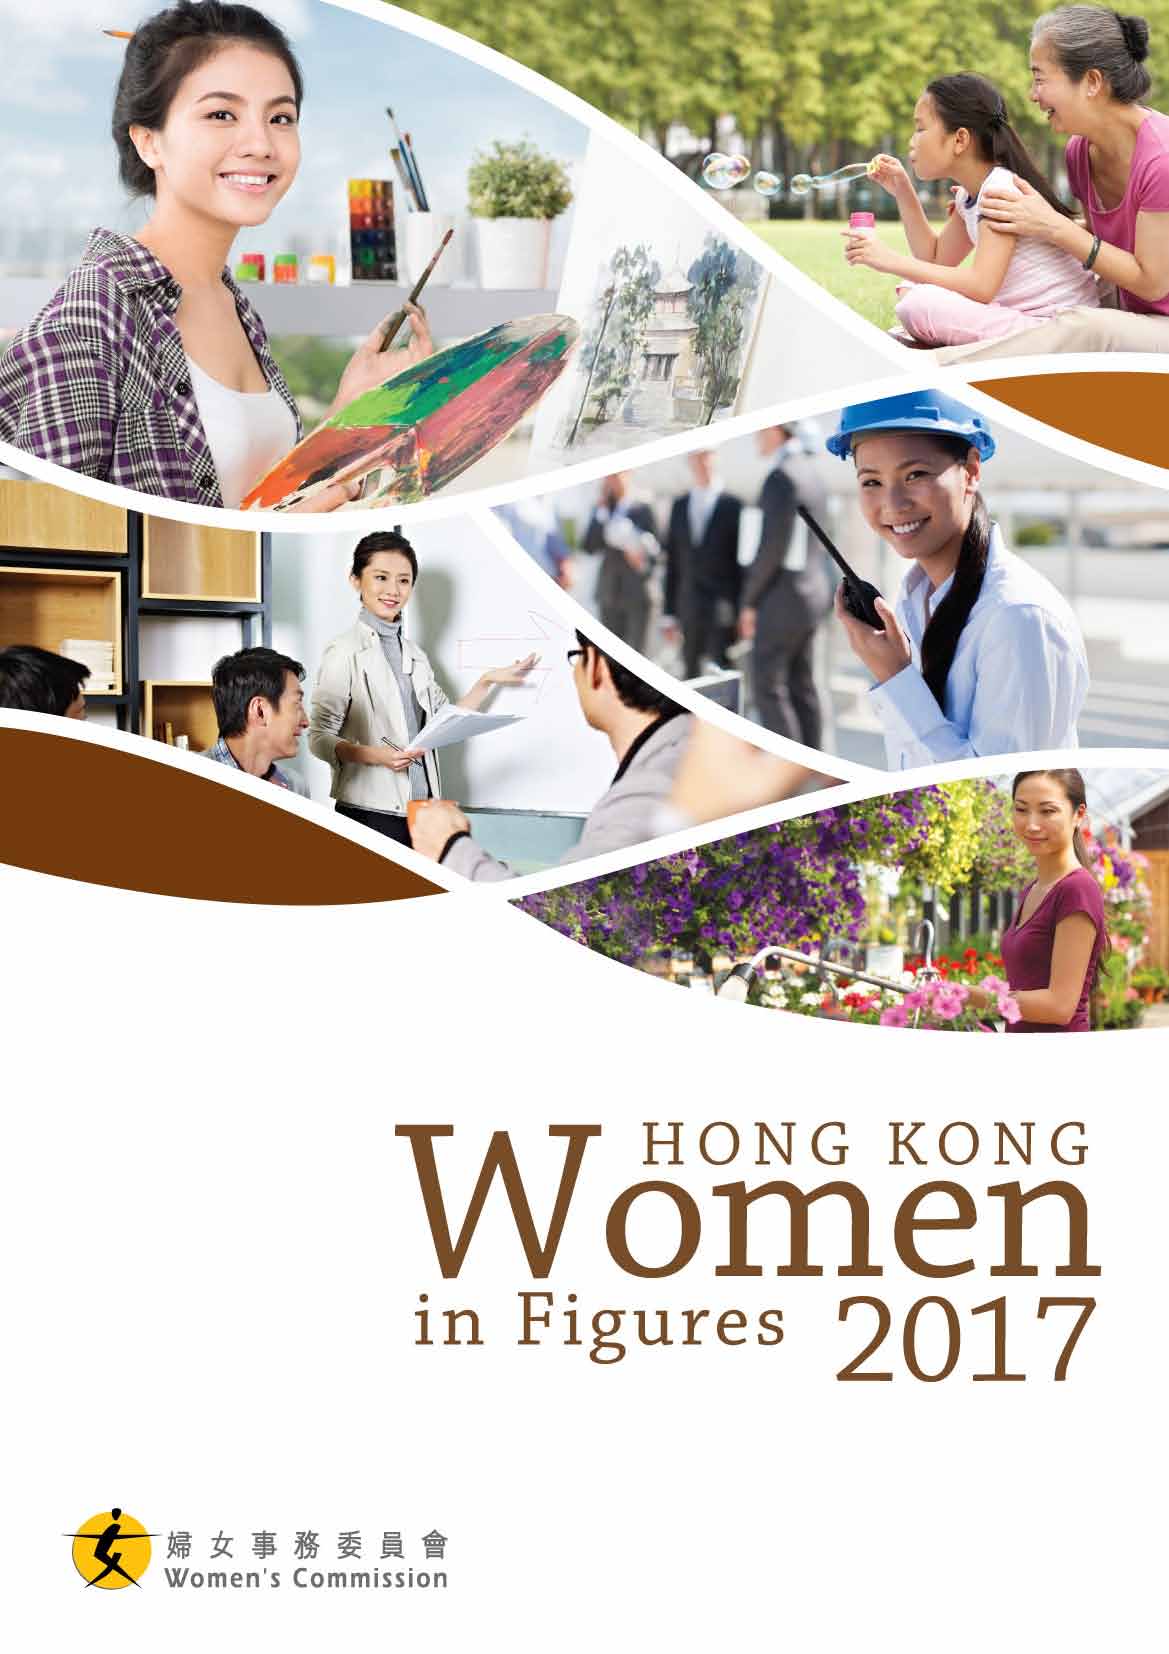 Hong Kong Women in Figures 2017 (2018 published)